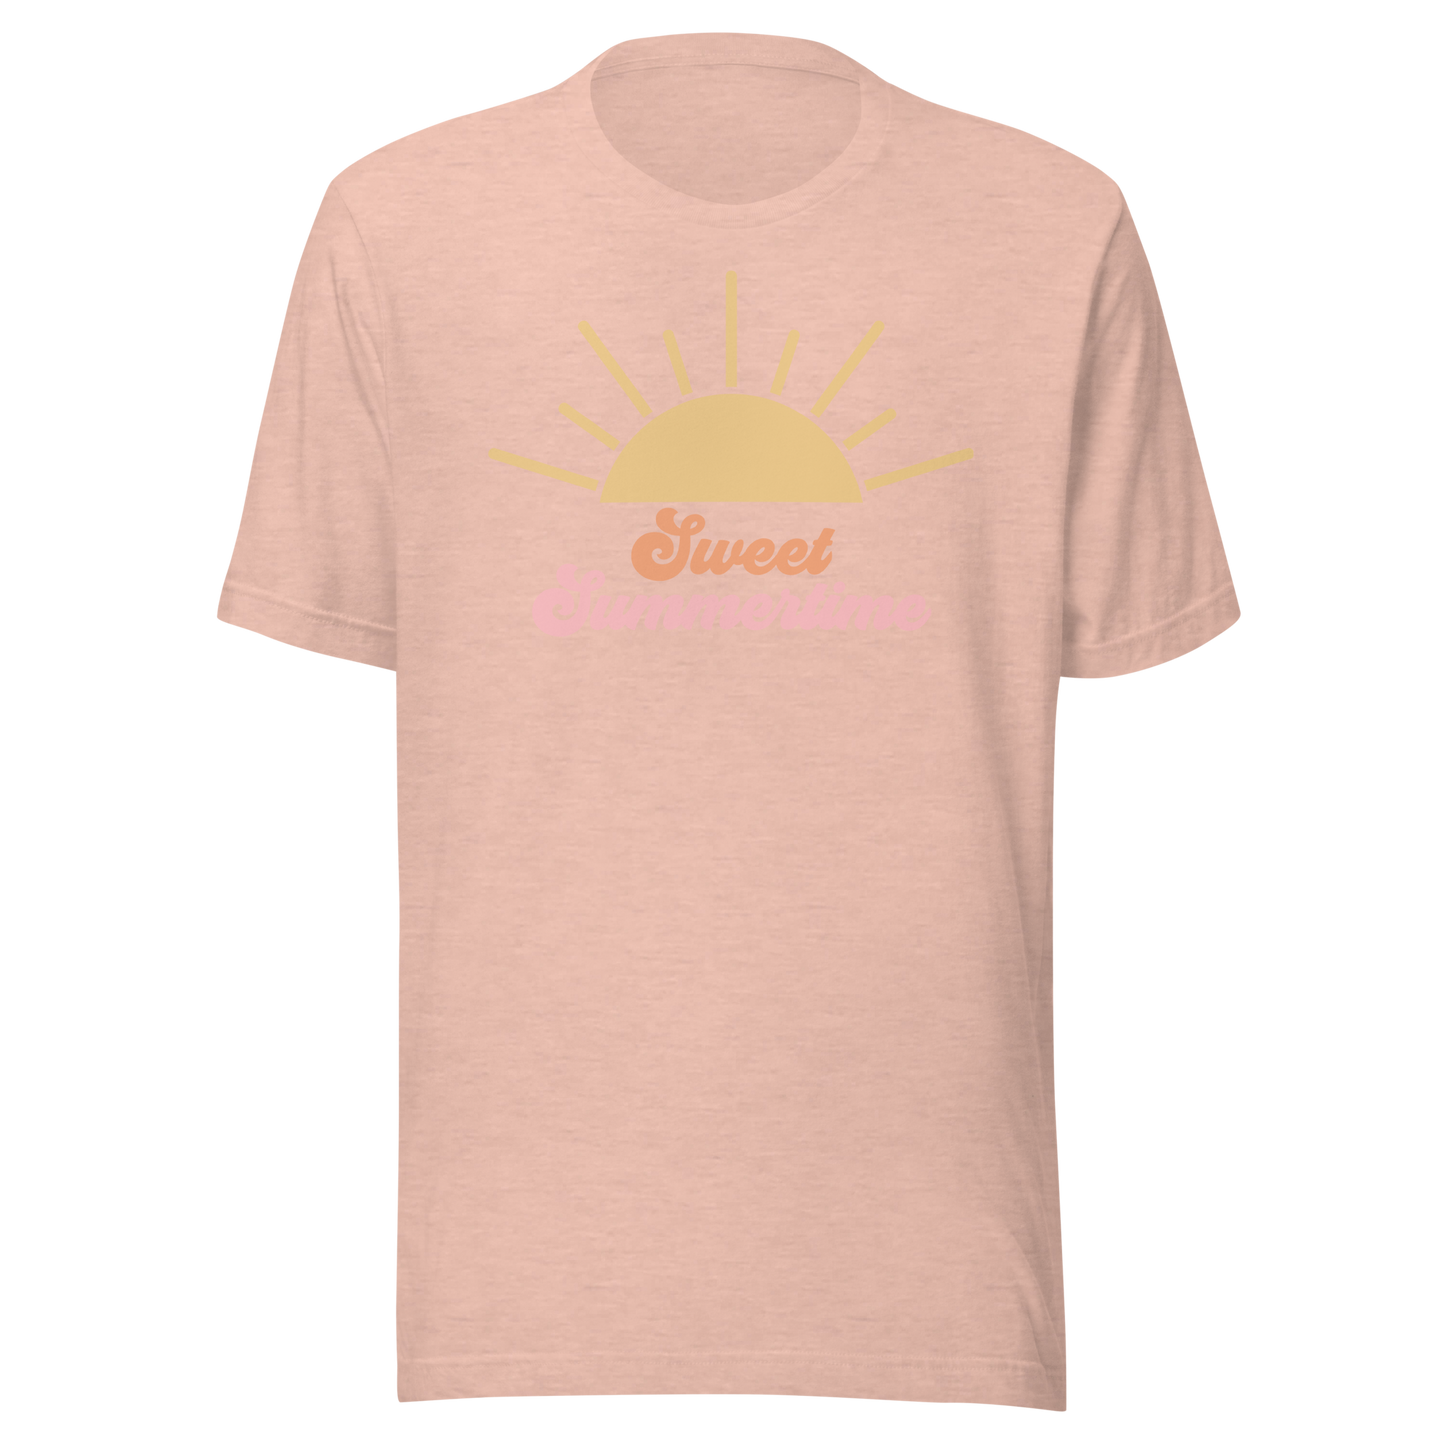 Sweet Summertime T-Shirt